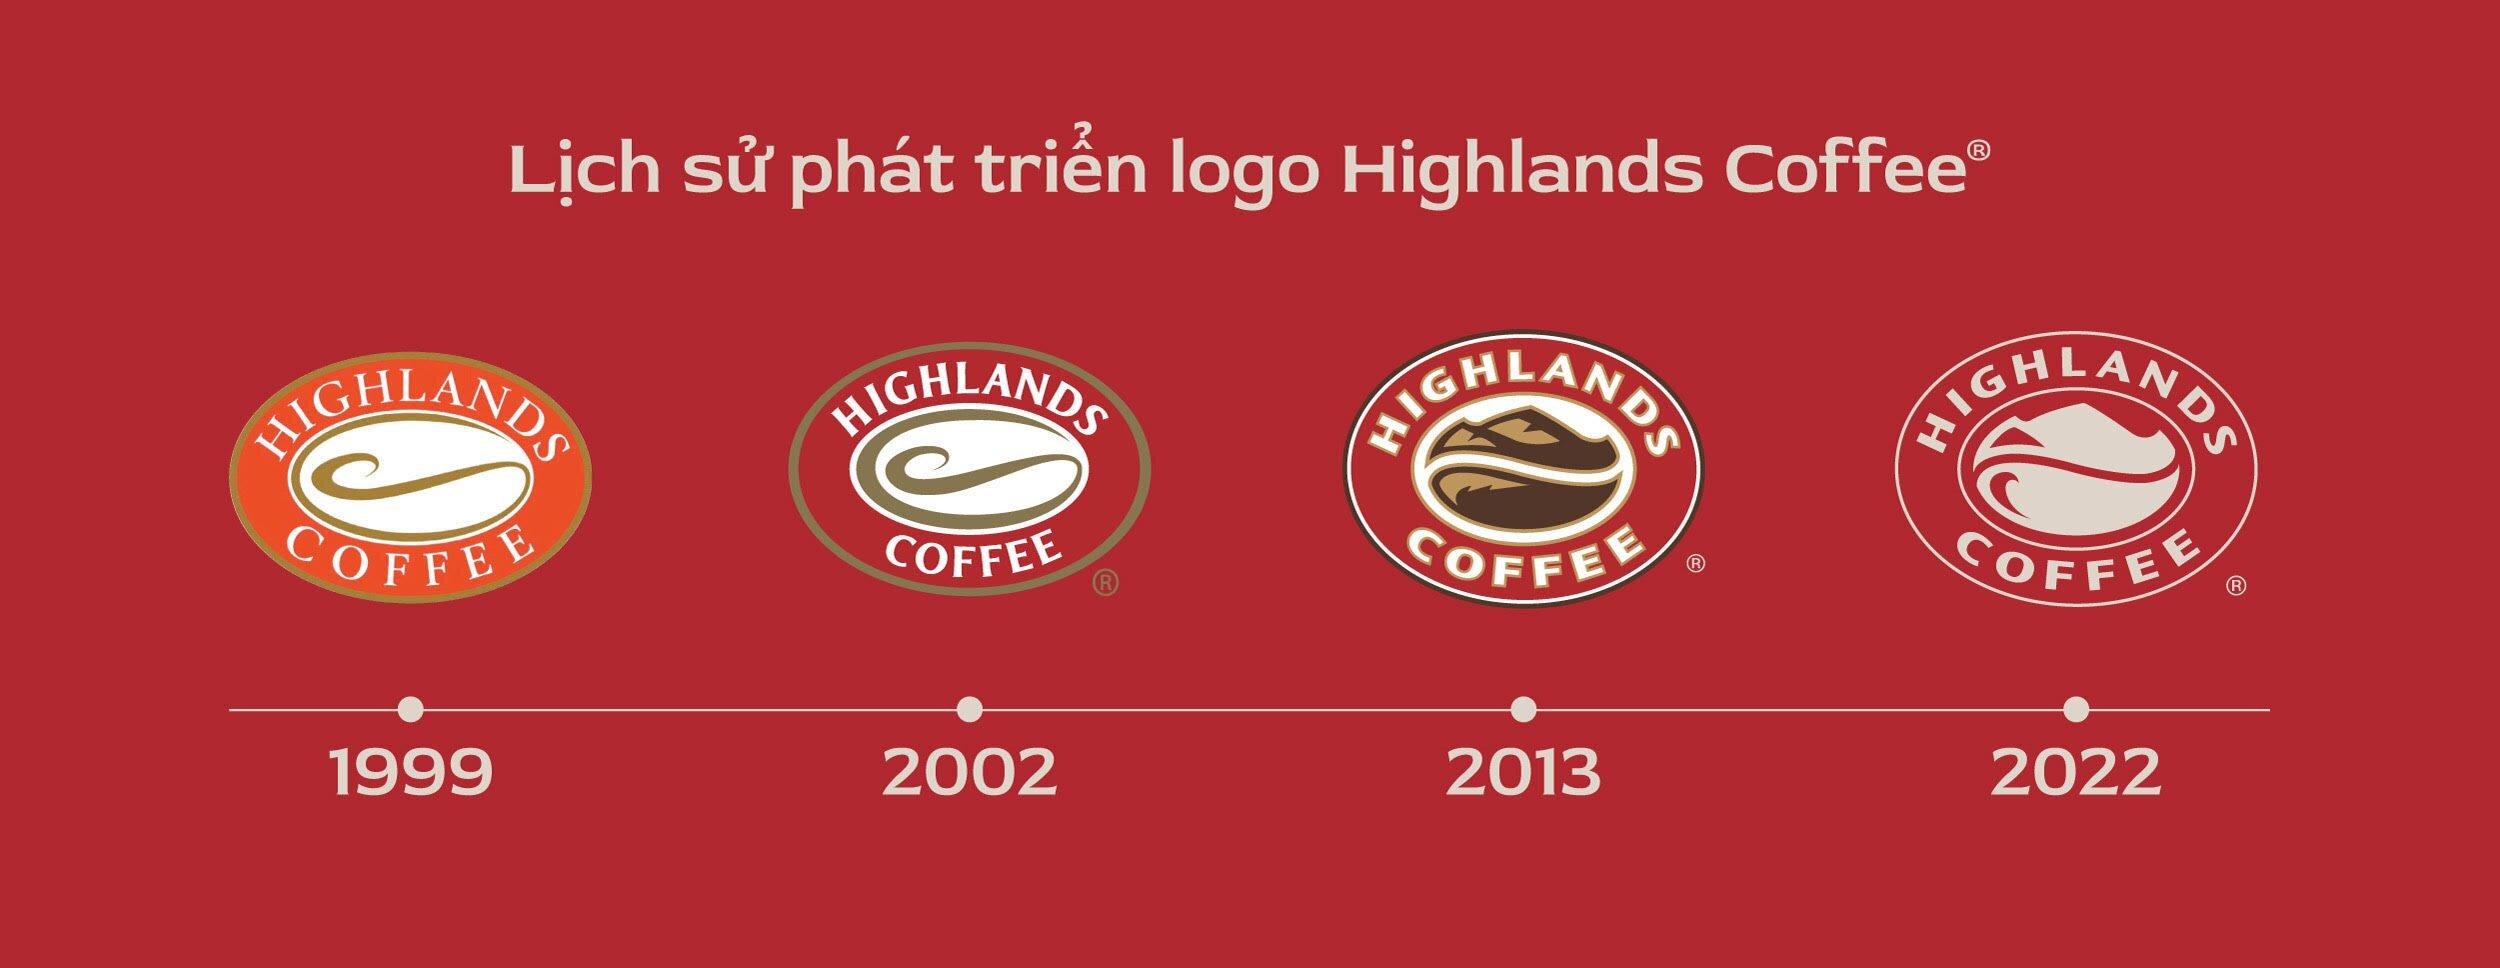 Sau hơn hai thập kỷ, Highlands đã đánh dấu bước “chuyển mình” bằng việc thay đổi nhận diện thương hiệu (Ảnh: Internet)